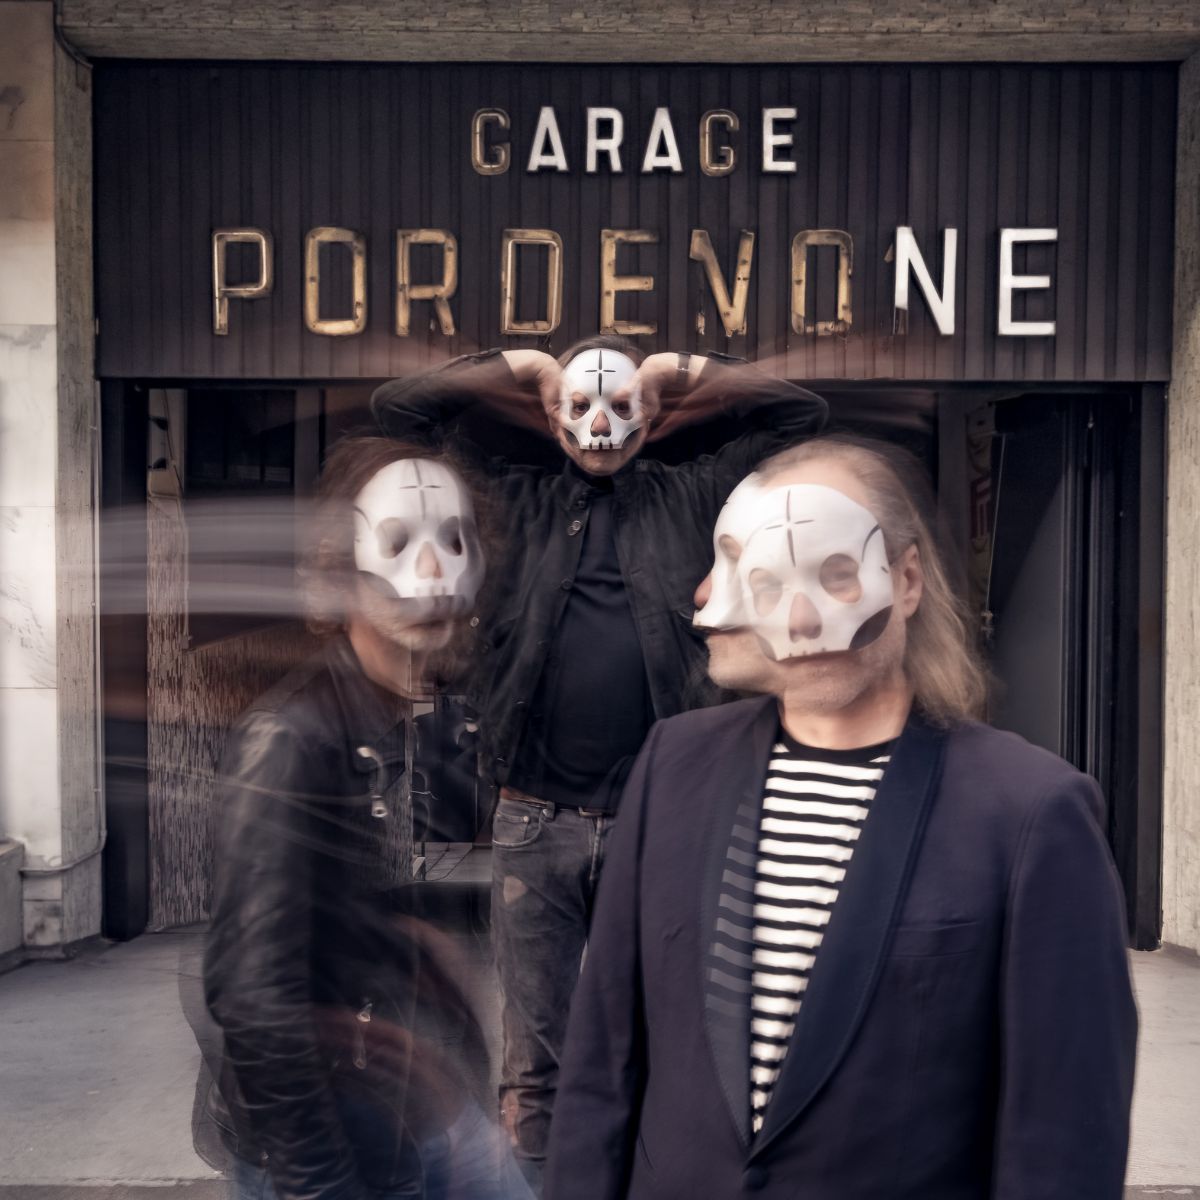 I Tre Allegri Ragazzi Morti più vivi che mai, fuori il nuovo album “Garage Pordenone”